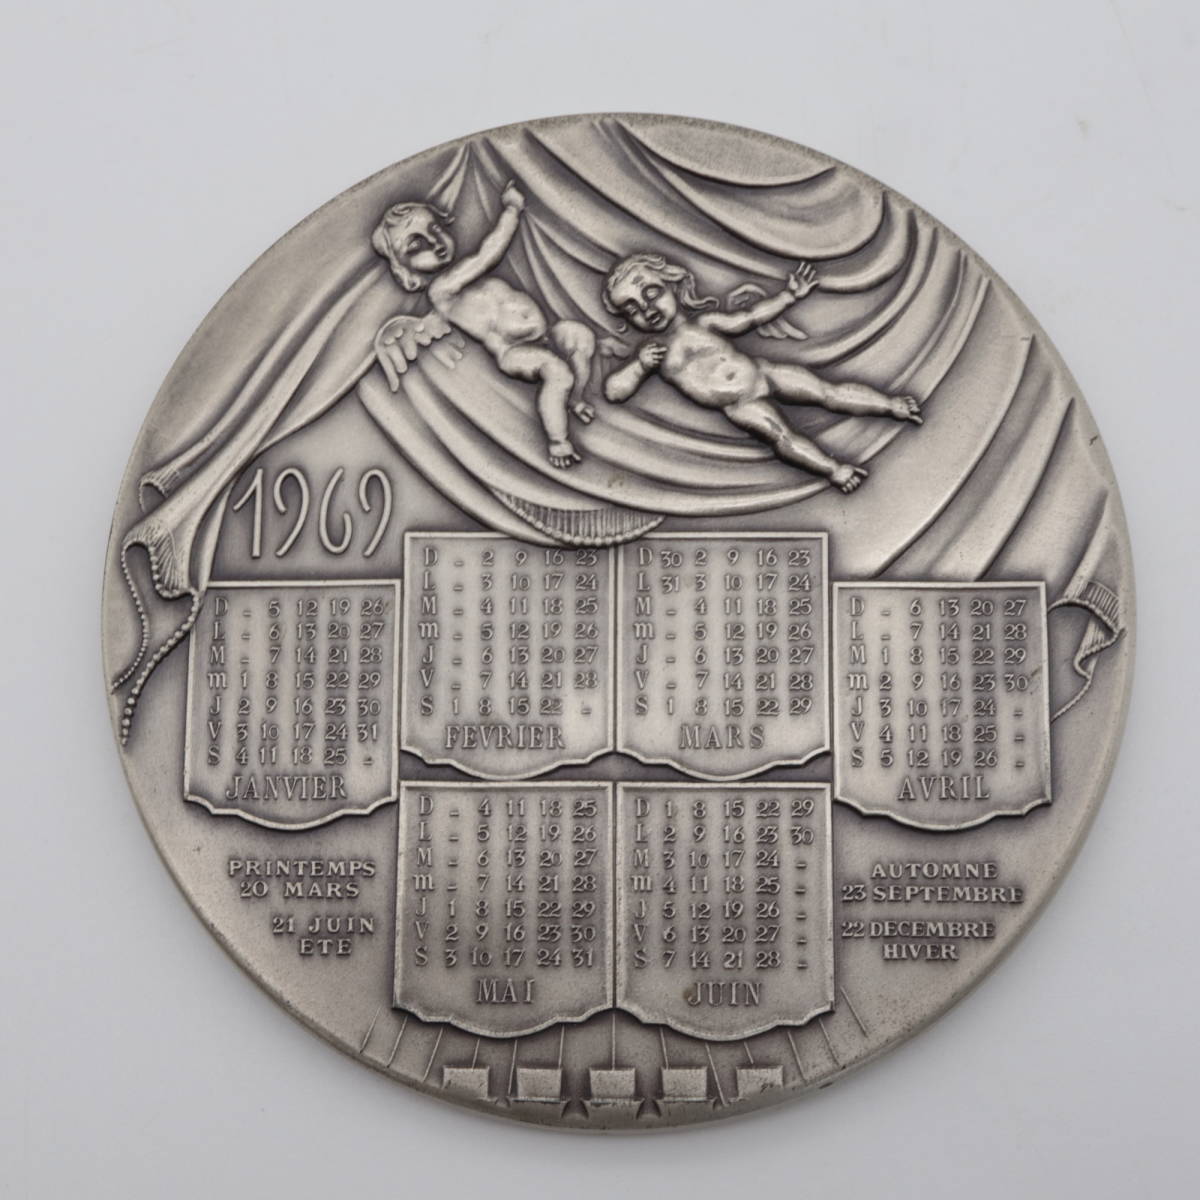 ◇◇銀製 大型メダル 398g 直径約9.6cm 1969年カレンダー 